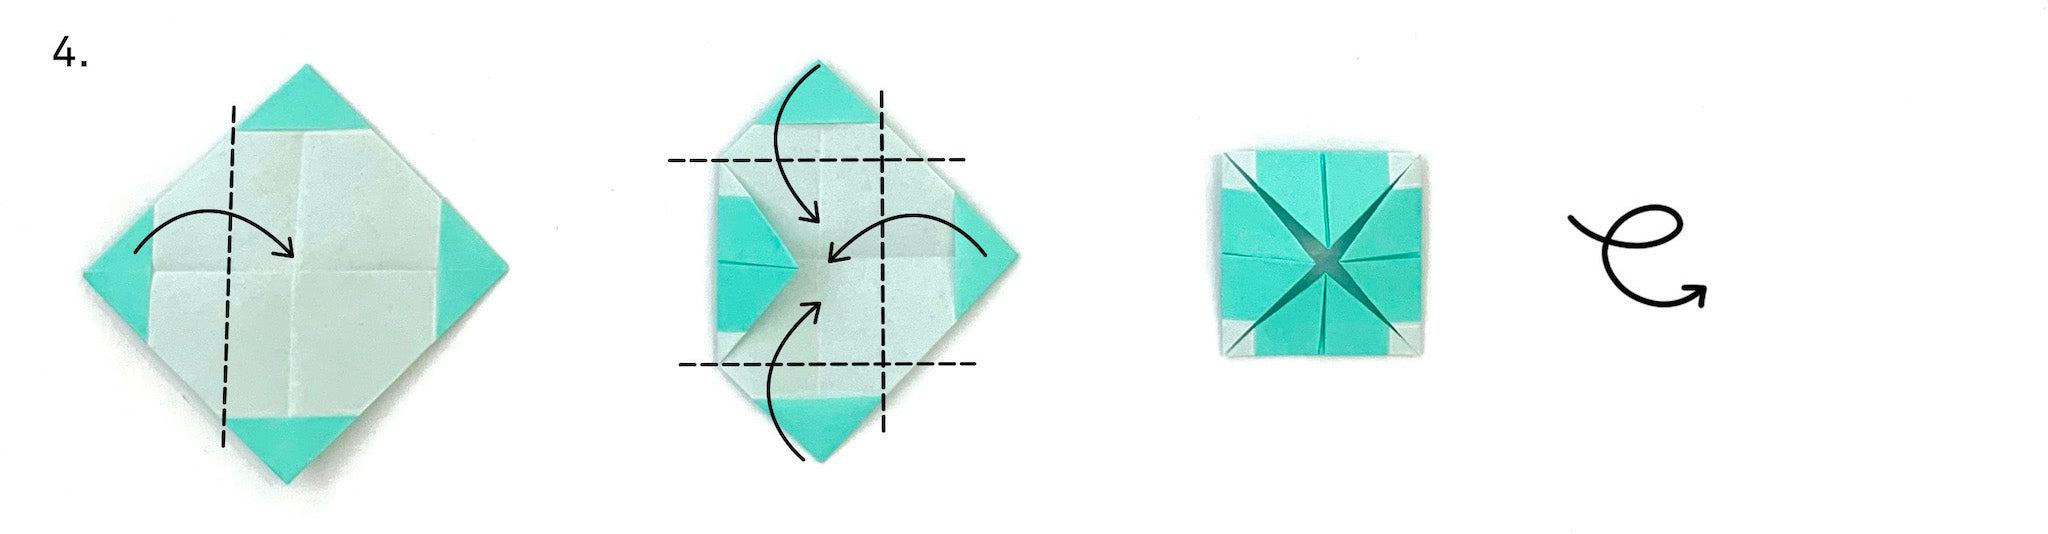 article-blog-tuto-croix-origami-etape-4